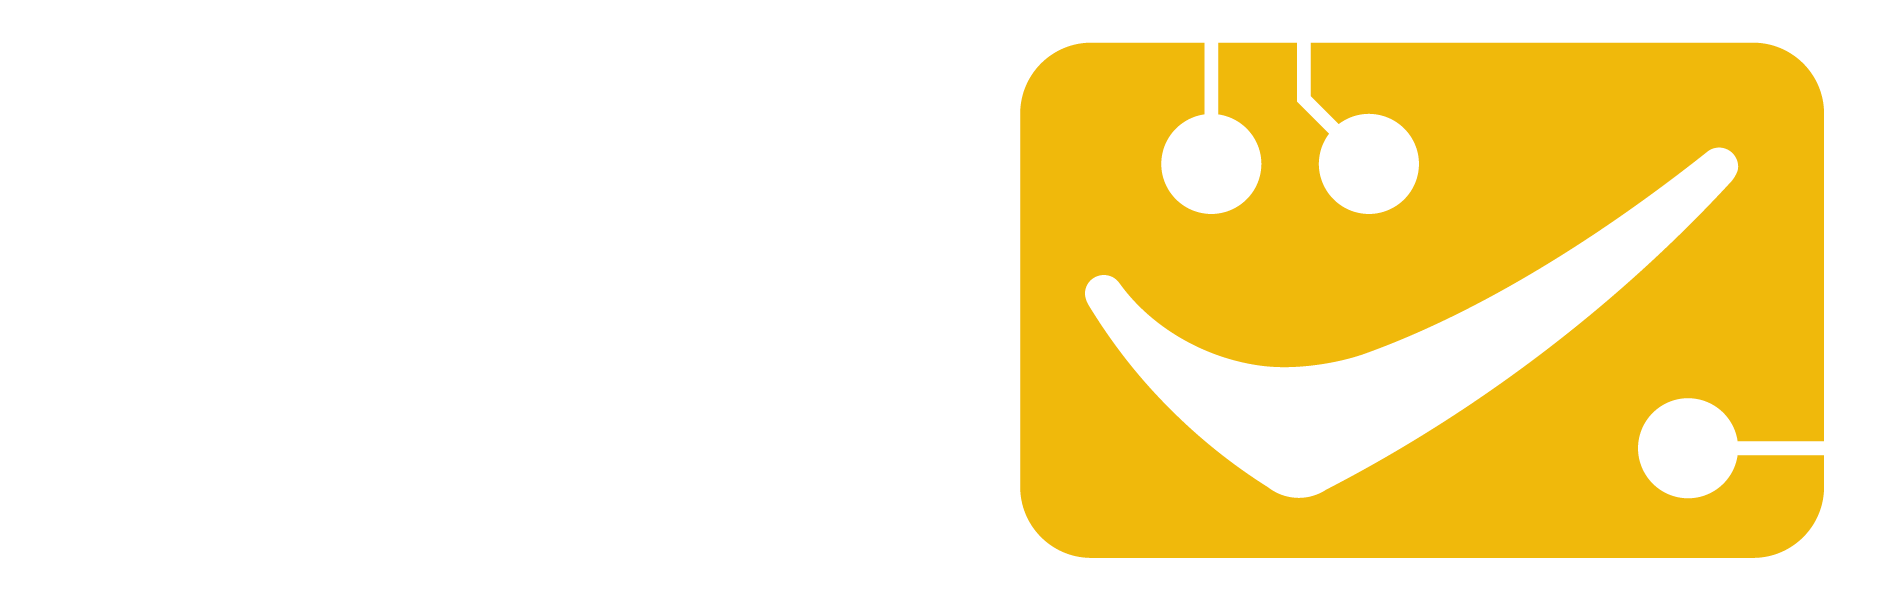 tabdeal-logo